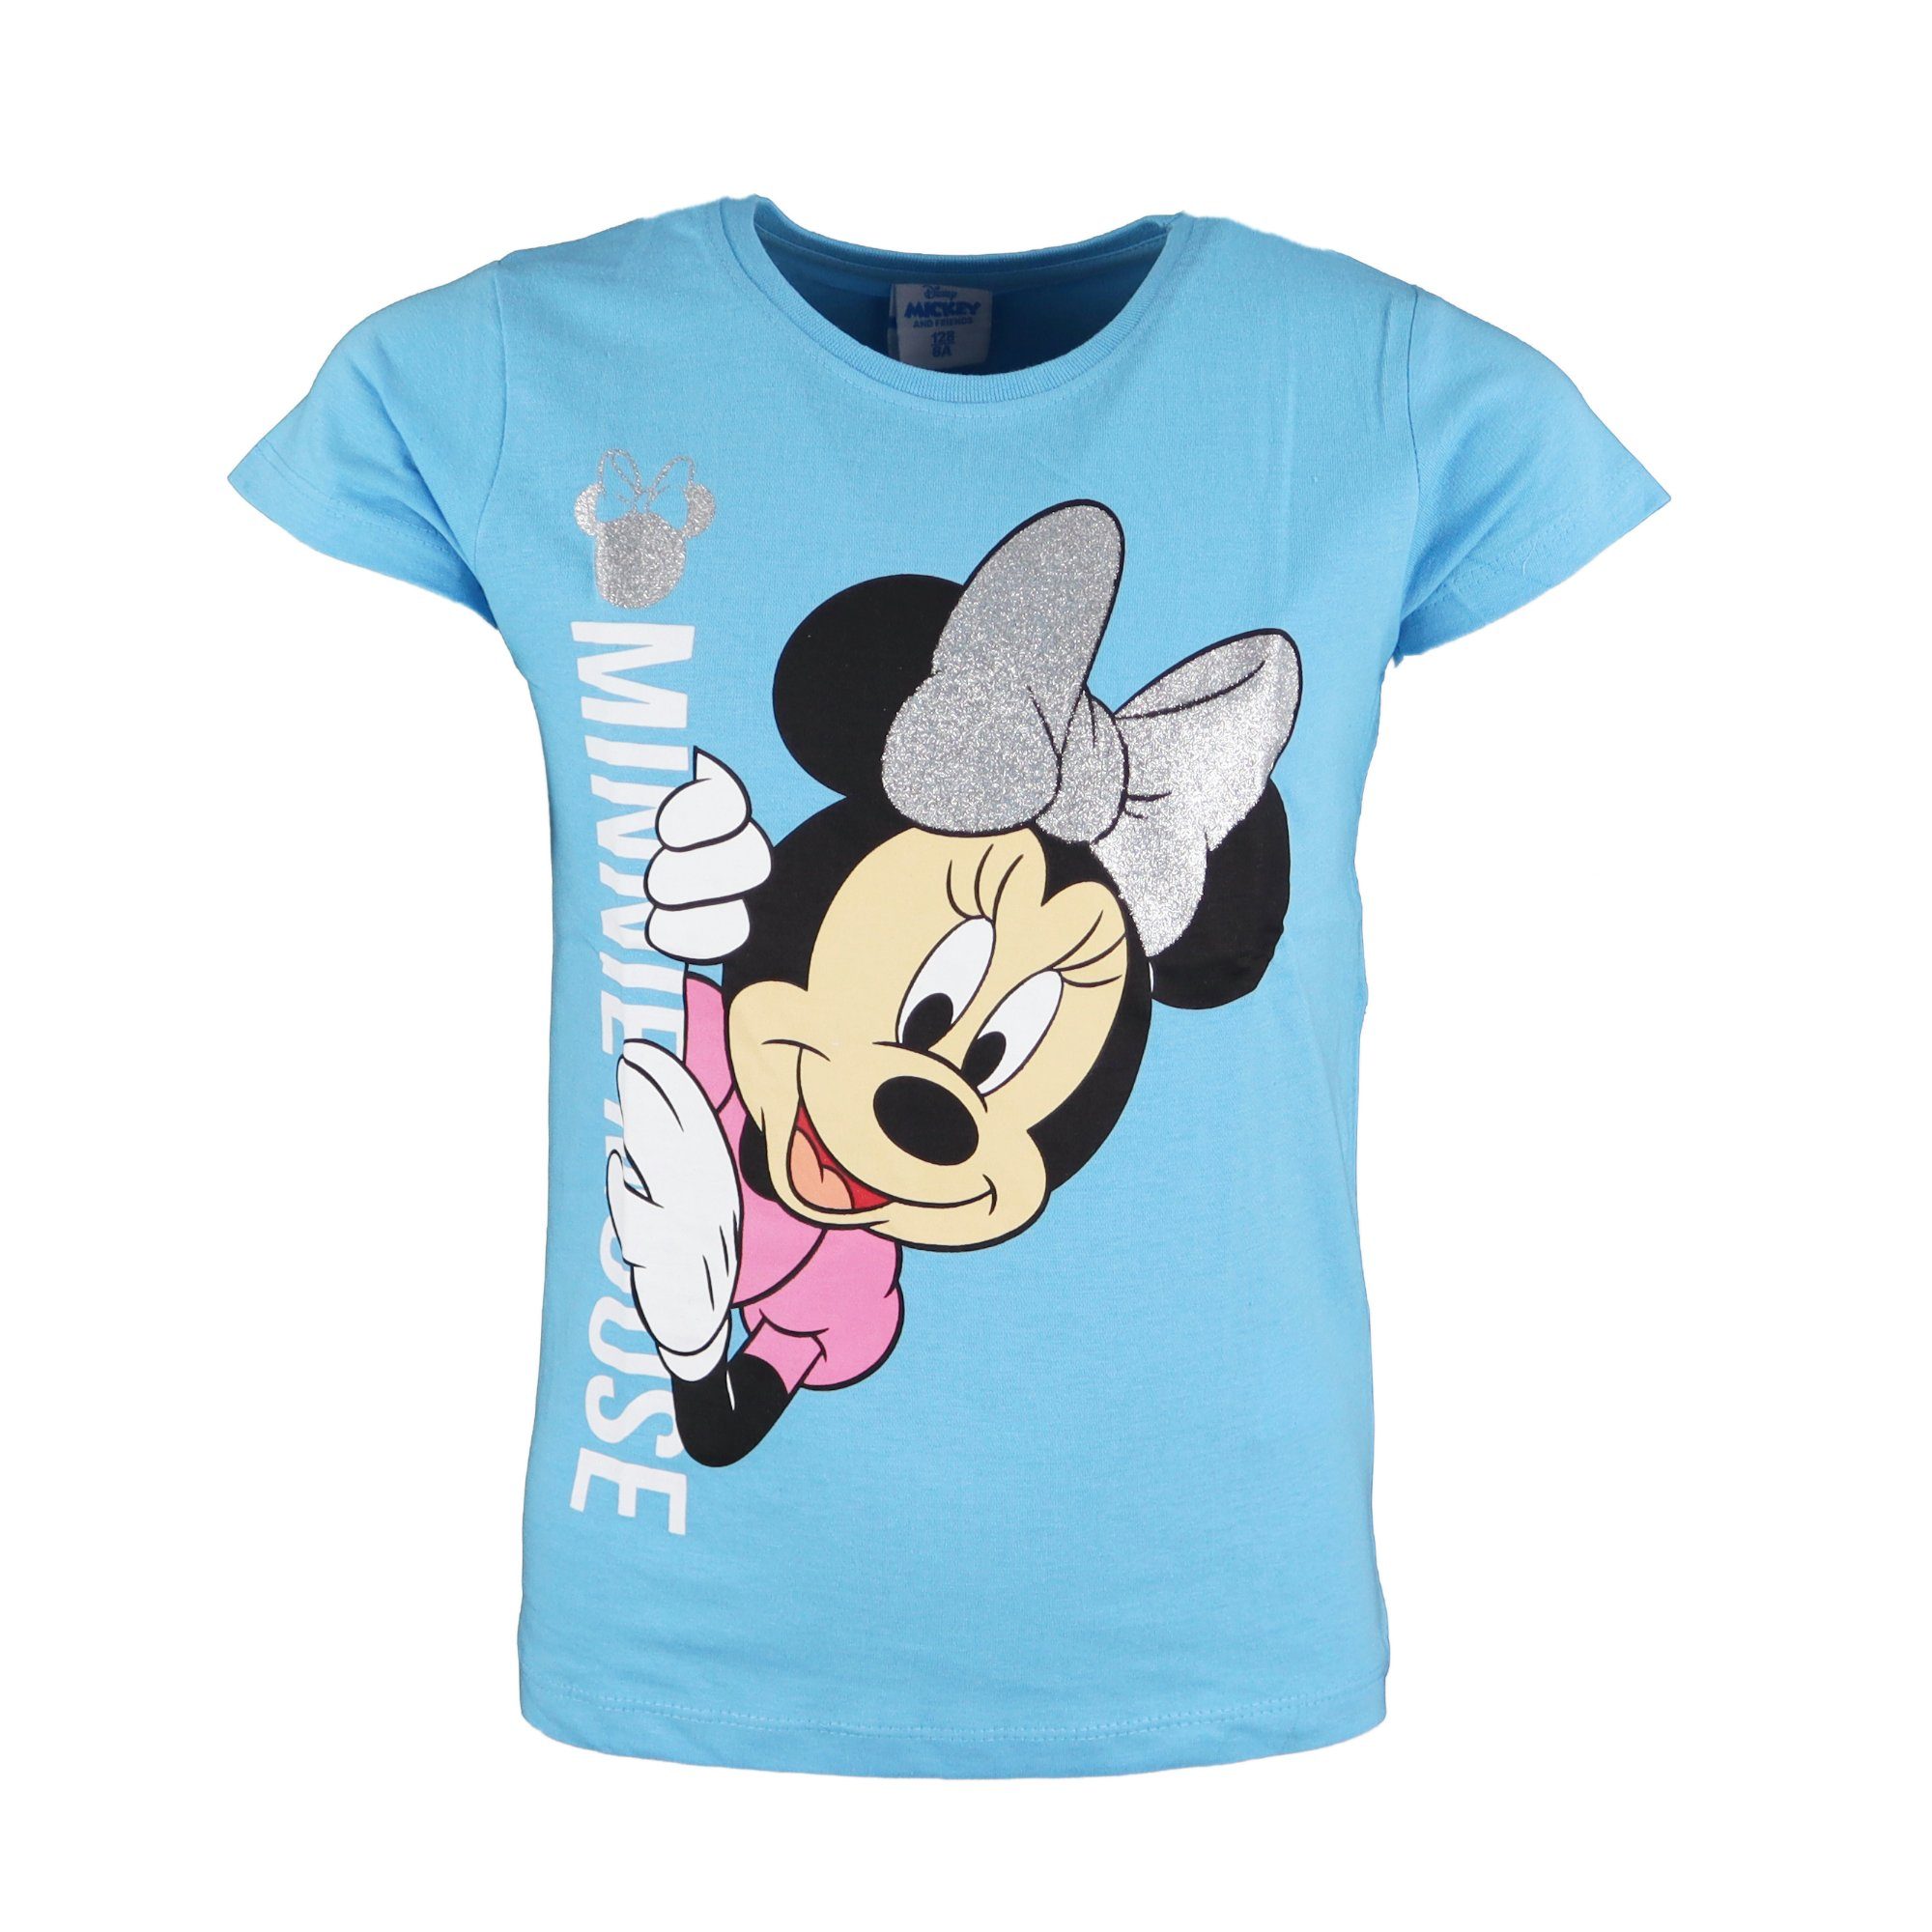 T-Shirt Minnie bis Disney Mädchen Blau 100% Shirt Mouse Kinder 104 134, Maus Gr. Baumwolle Minnie